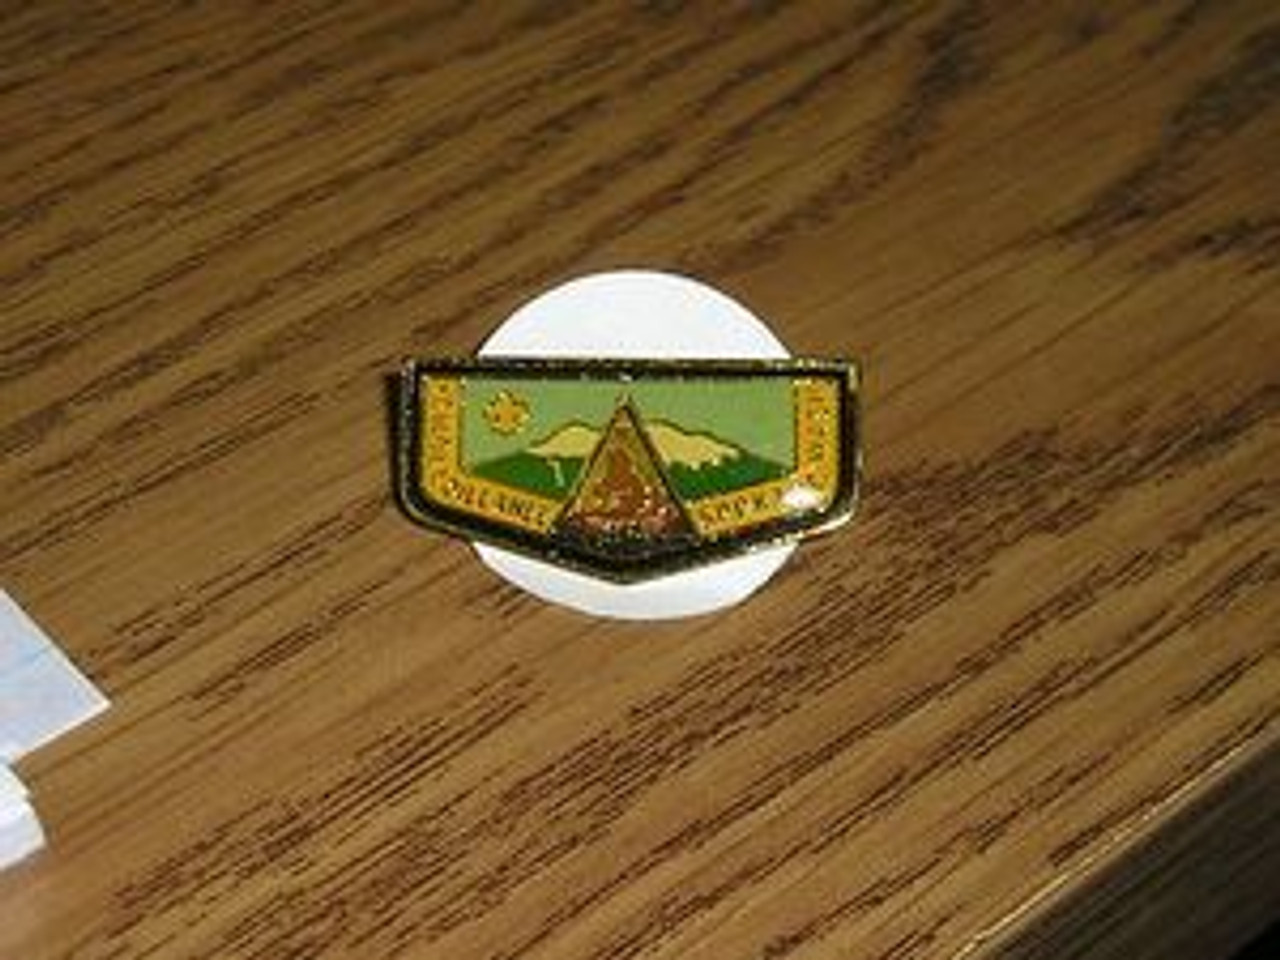 Lemolloillahee O.A. Lodge #415 Flap Pin - Scout